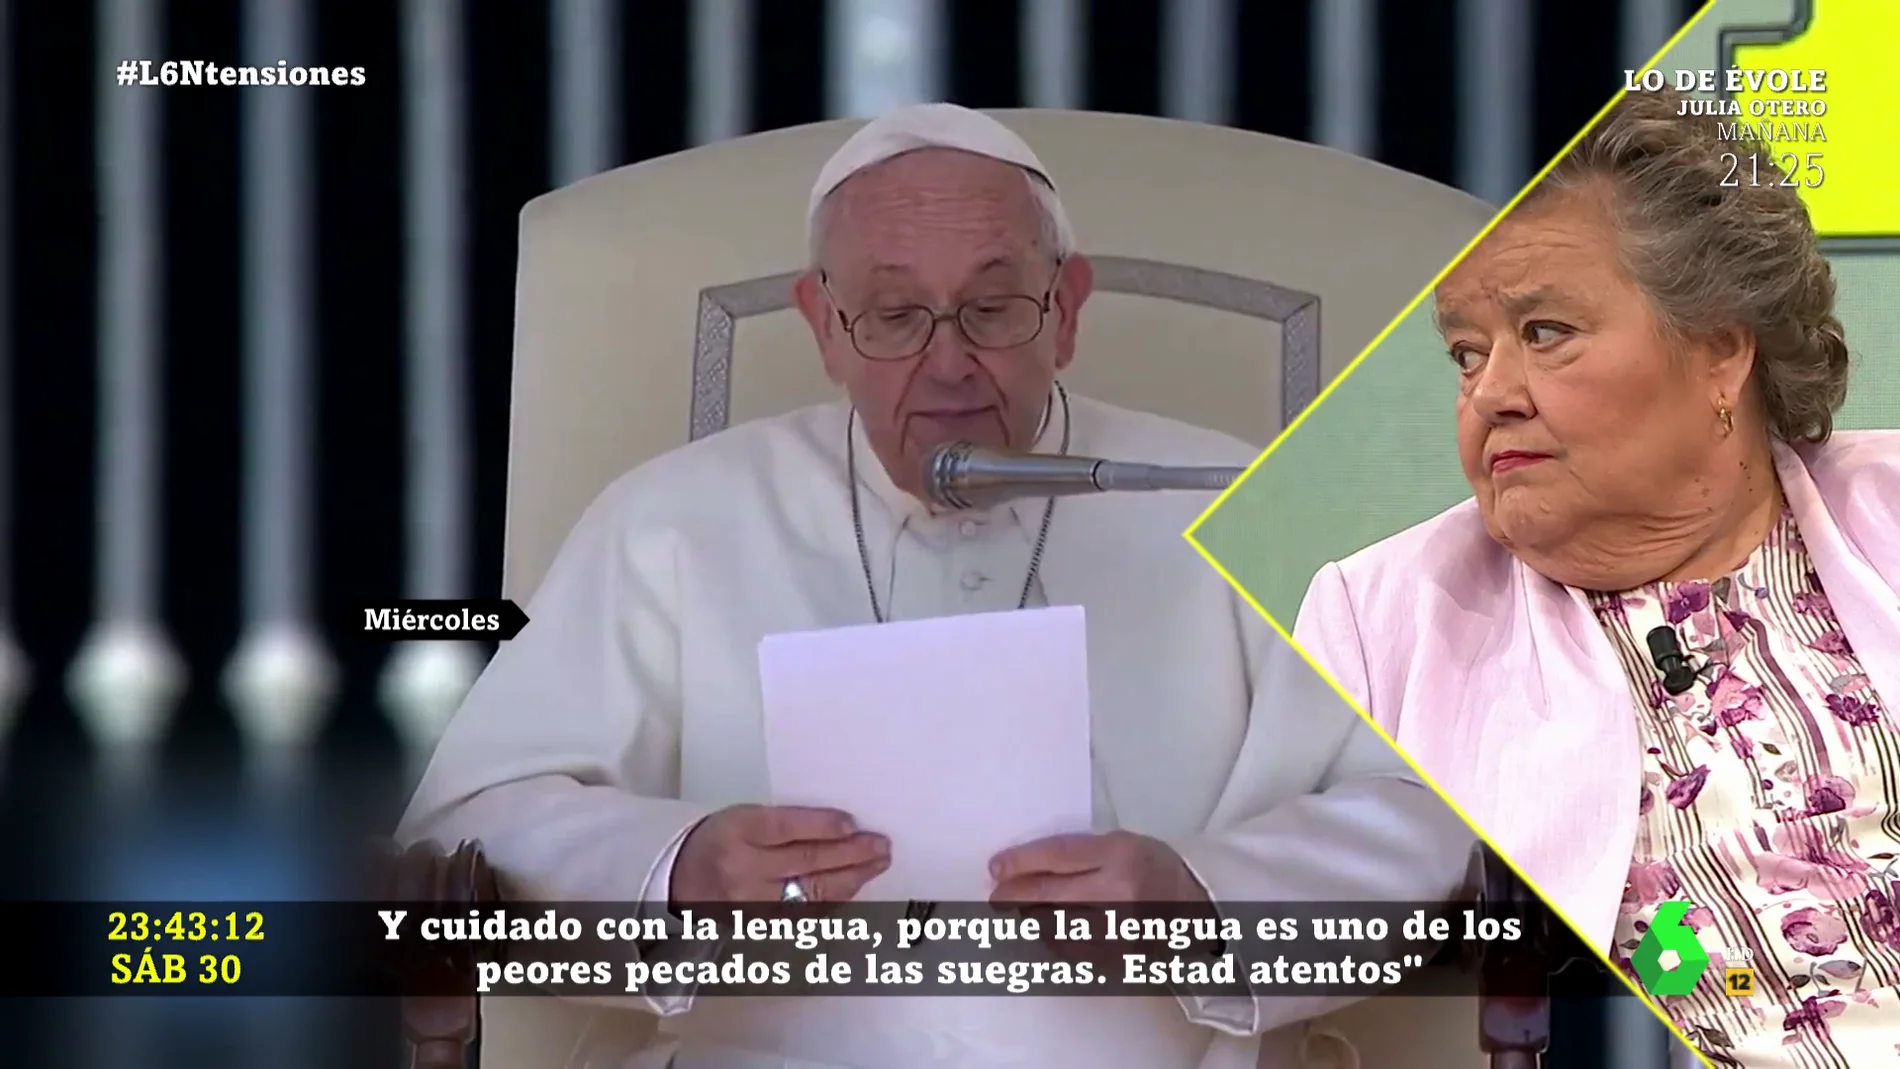 La respuesta de Cristina Almeida al polémico discurso del Papa sobre las suegras: "Es bochornoso y miserable"